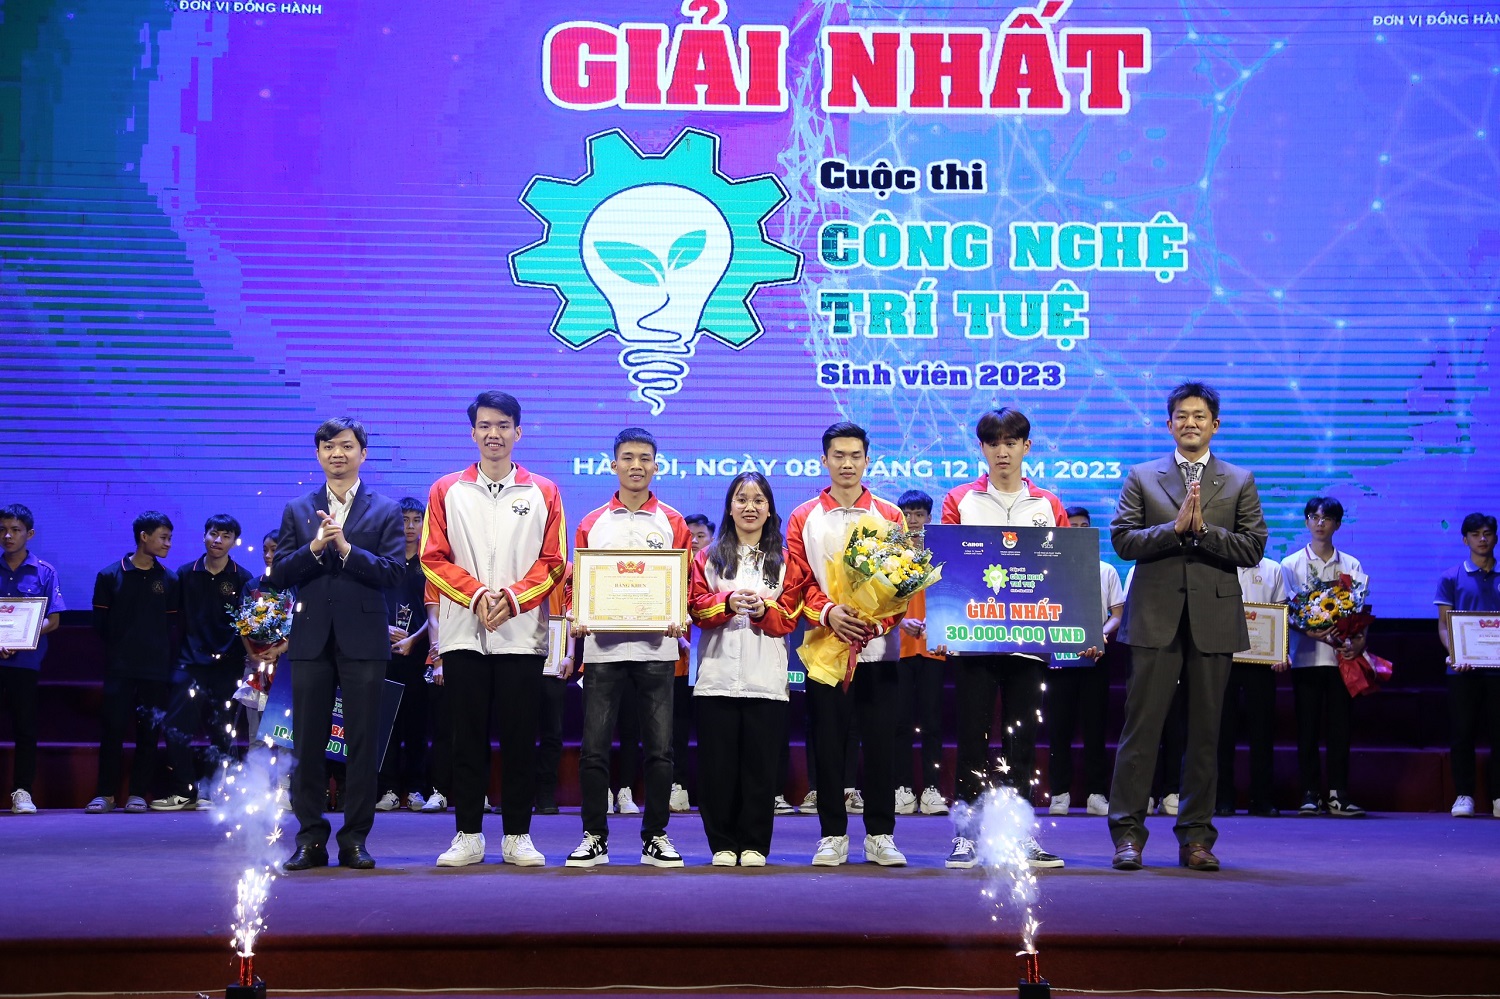 ĐH Thái Nguyên giành giải Nhất cuộc thi “Công nghệ trí tuệ Sinh viên”